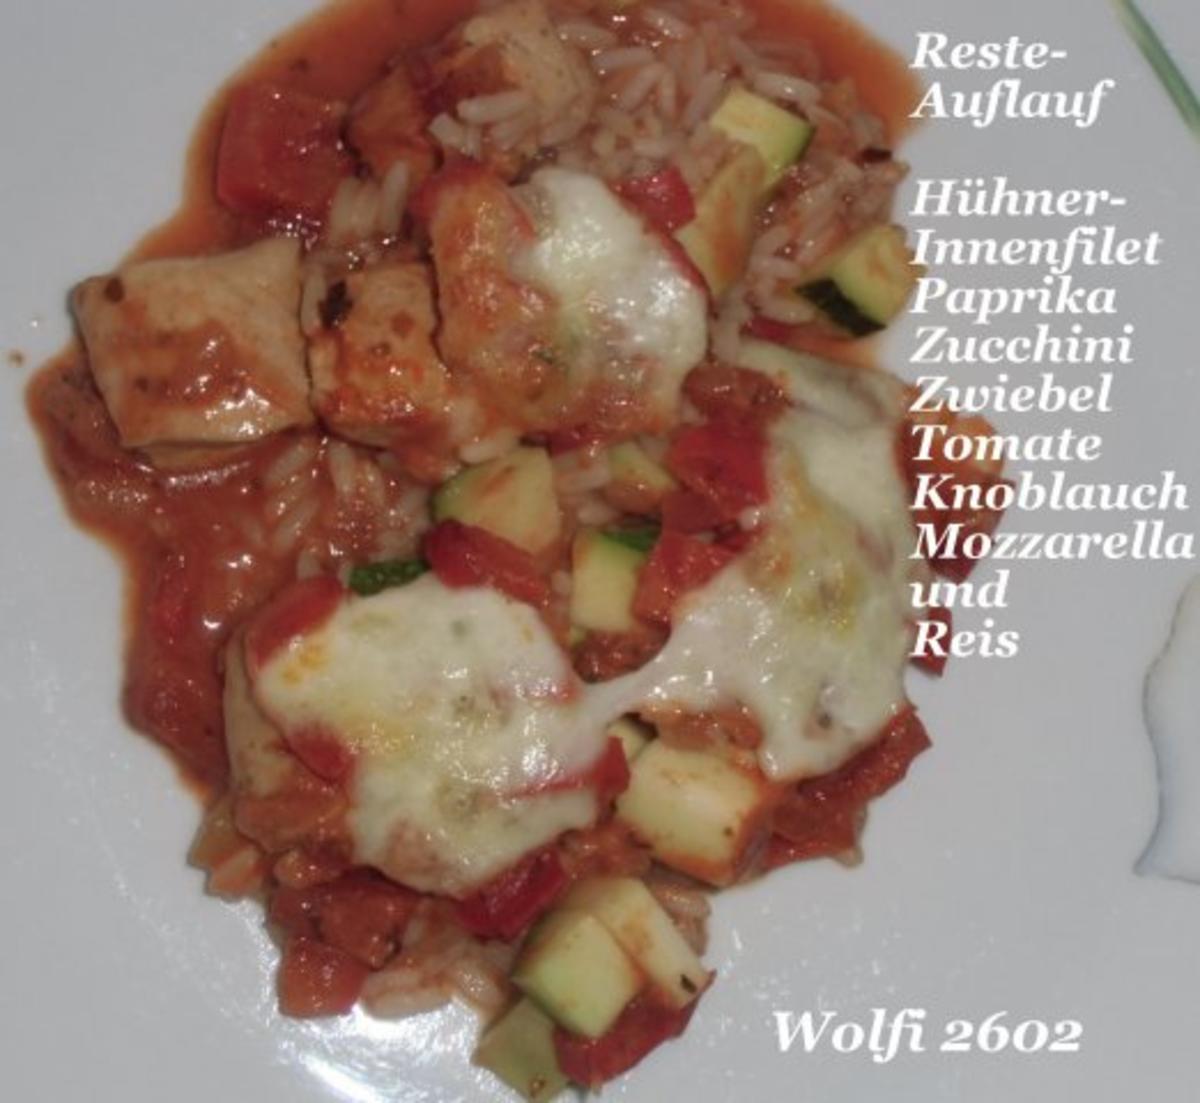 Huhn : Resteauflauf mit Hühnerinnenfilet, Paprika, Zucchini, Tomate, Zwiebel, Mozzarella - Rezept - Bild Nr. 3